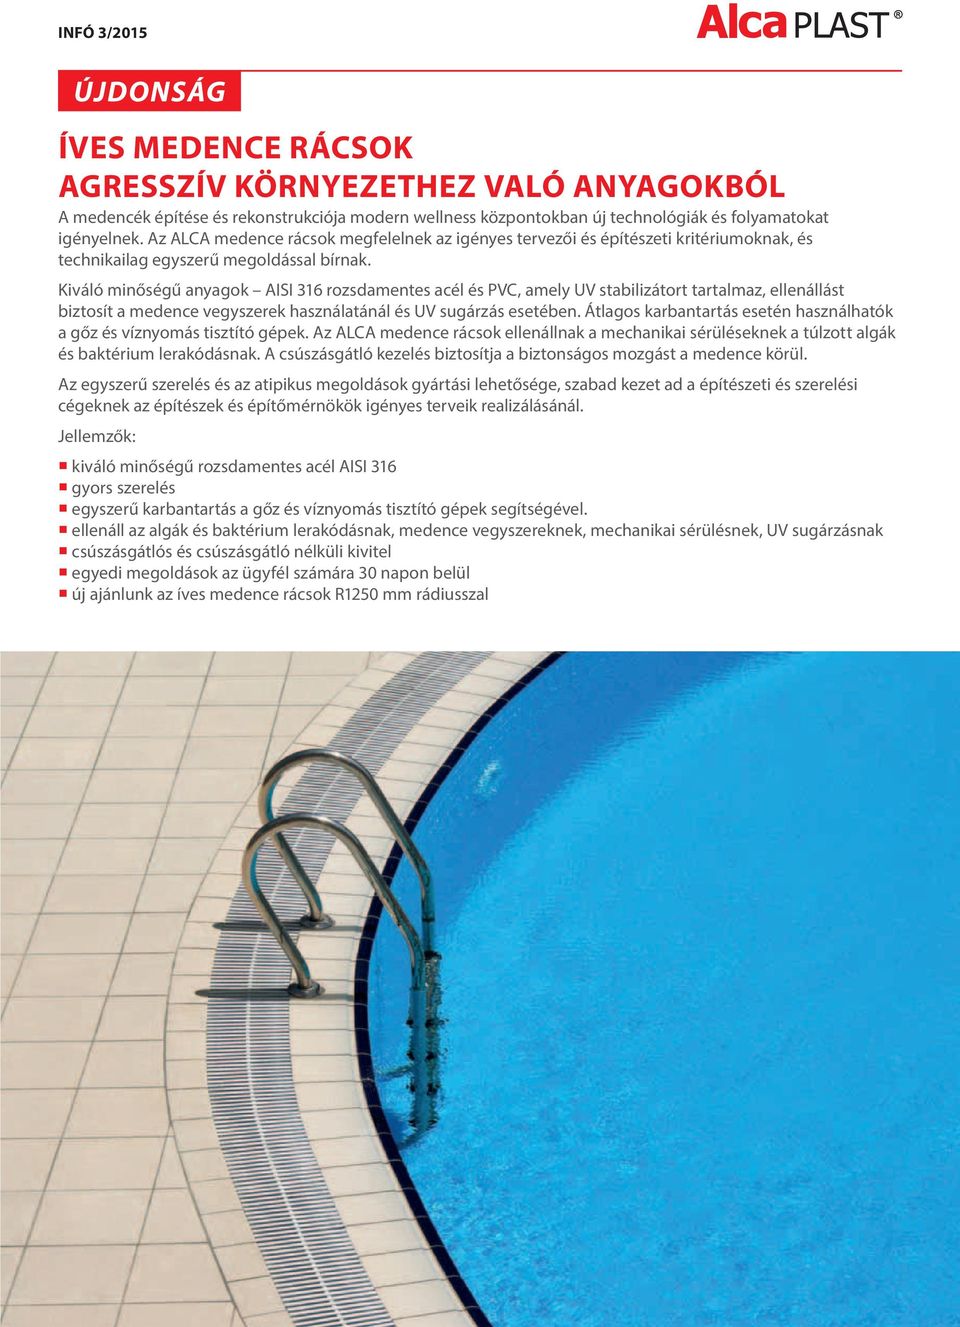 Kiváló minőségű anyagok AISI 316 rozsdamentes acél és PVC, amely UV stabilizátort tartalmaz, ellenállást biztosít a medence vegyszerek használatánál és UV sugzás esetében.